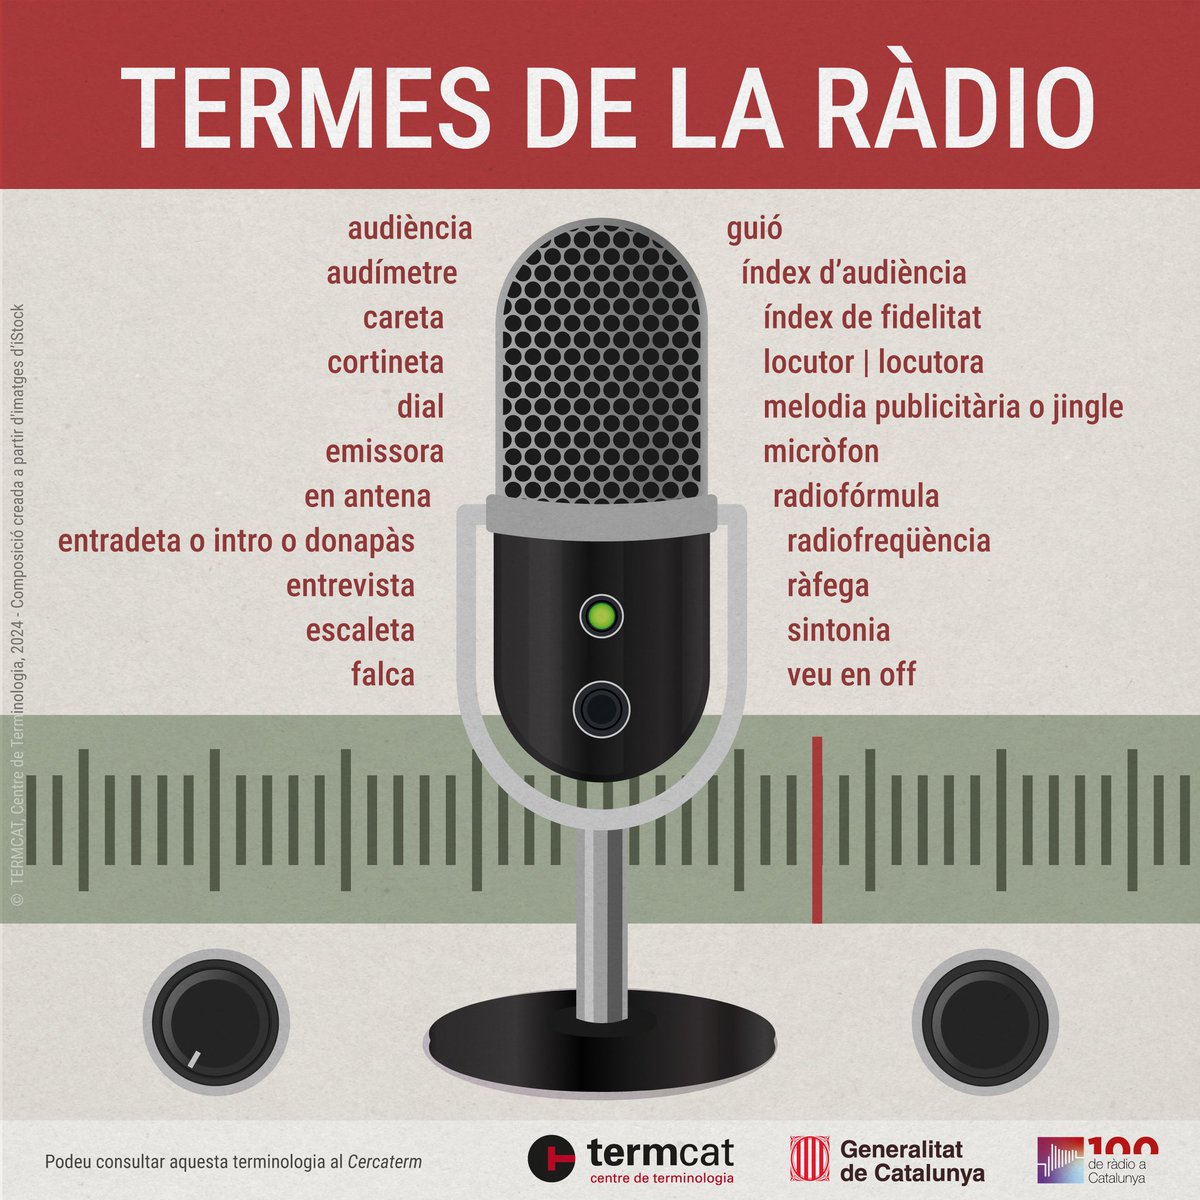 📻 Per celebrar el centenari de la ràdio a Catalunya, el @termcat us presenta la infografia interactiva 'Termes de la ràdio'!

Una vintena de termes bàsics amb accés a la seva fitxa completa amb la definició i els equivalents en altres llengües.

👉🏼 termcat.cat/ca/actualitat/…